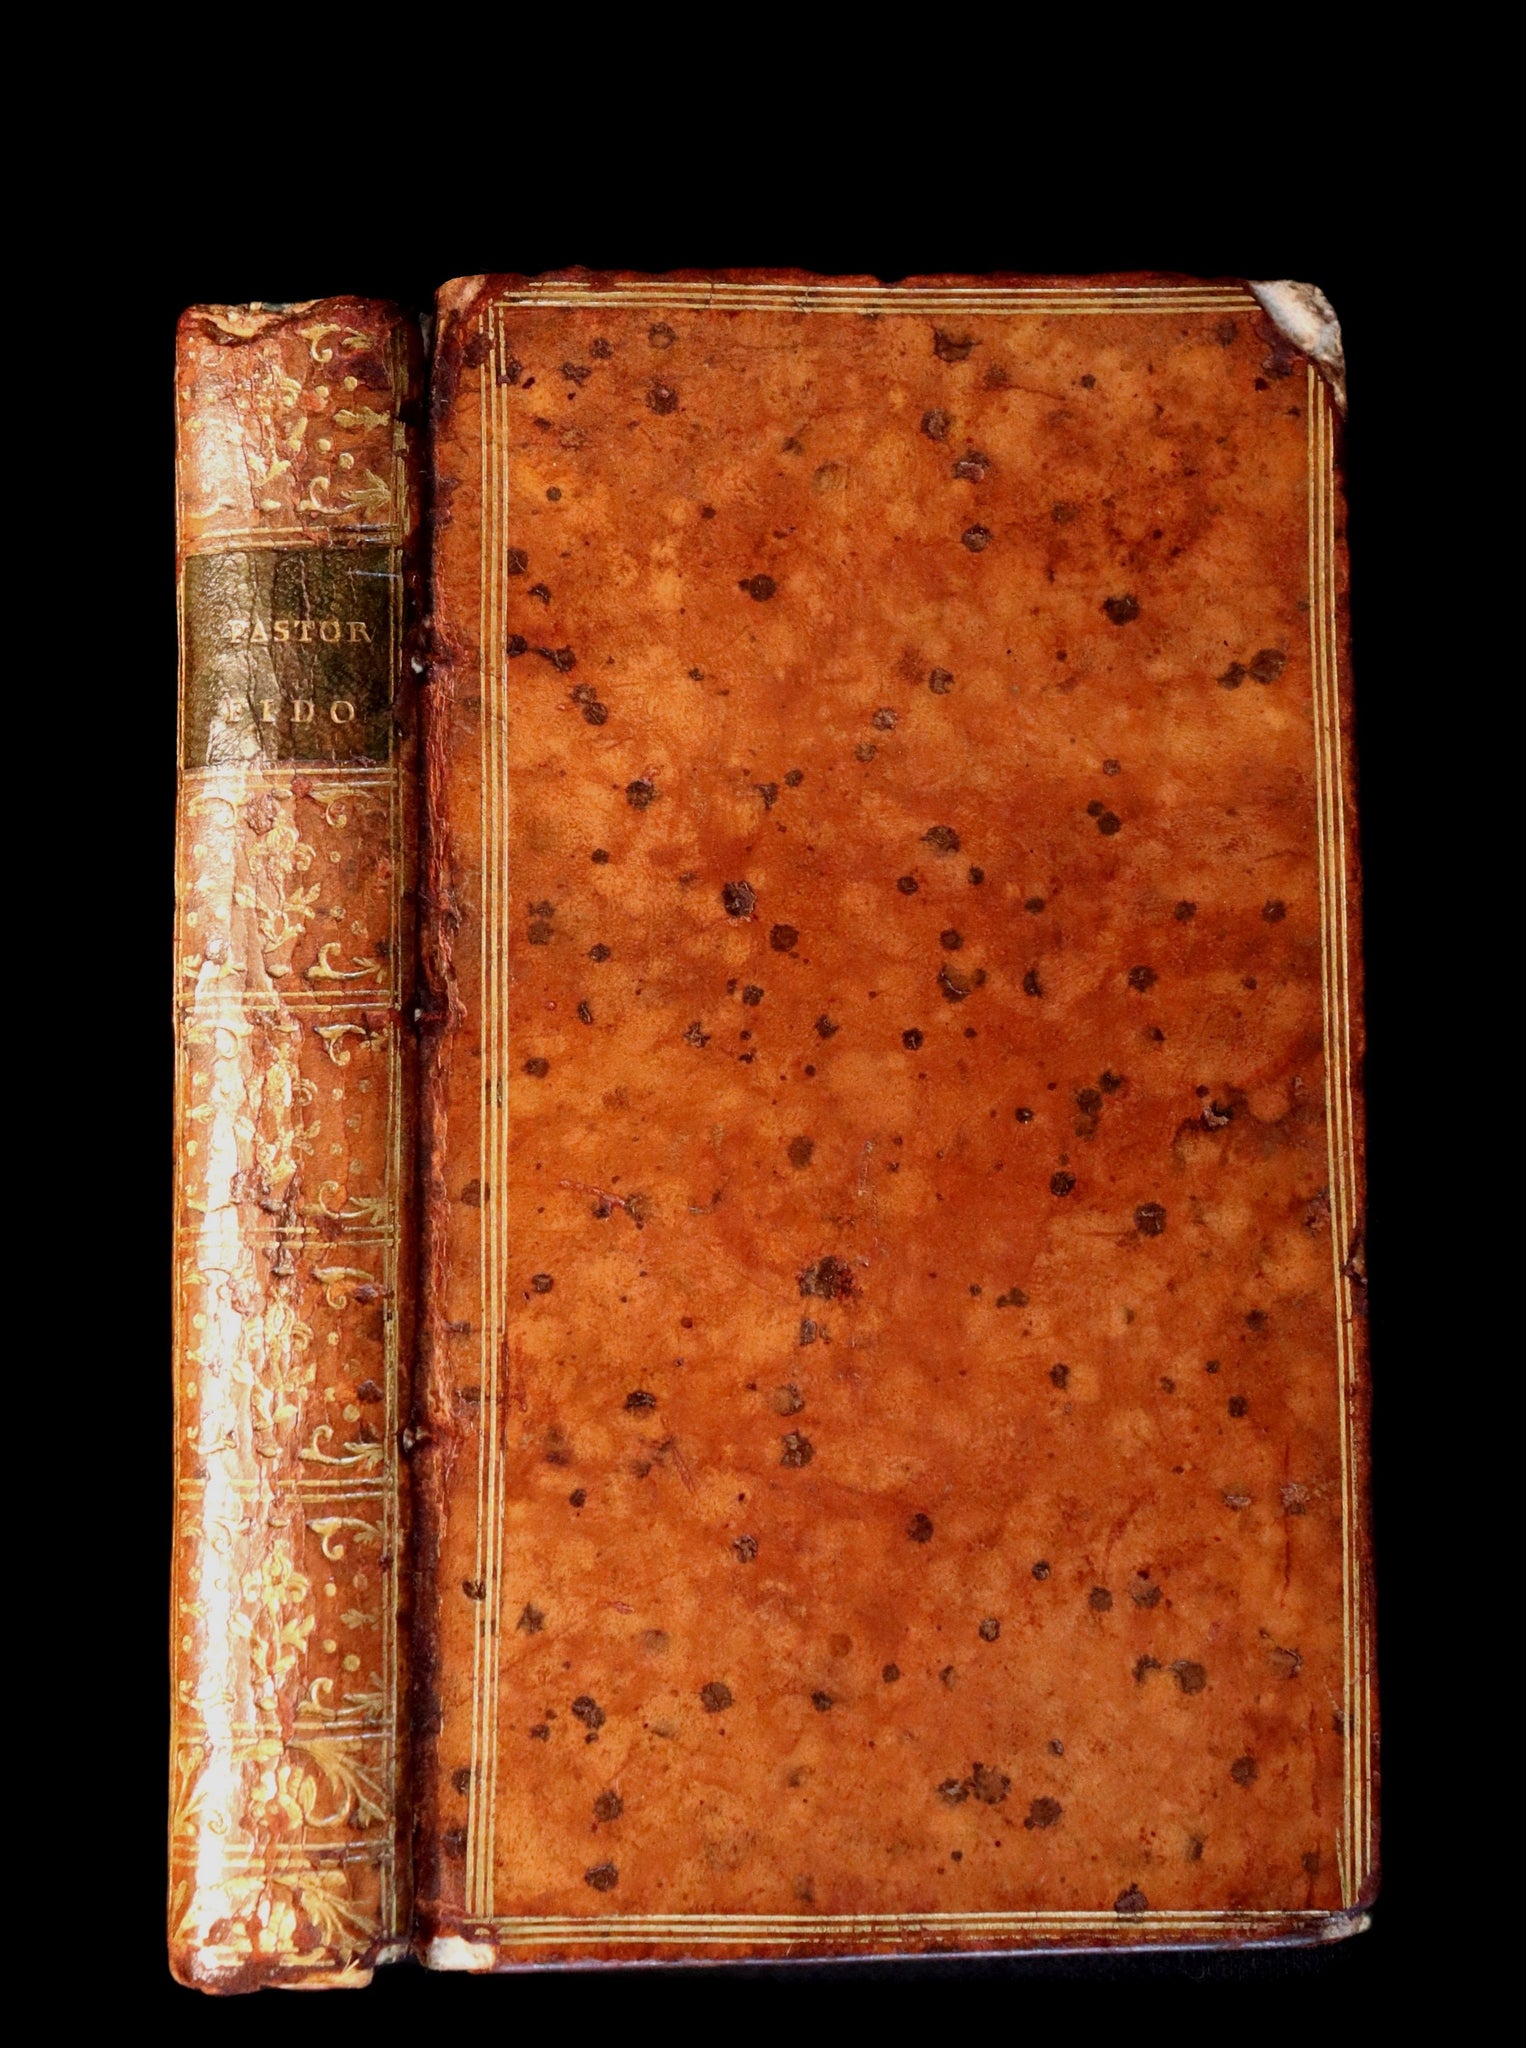 1768 Rare Italian Book - IL PASTOR FIDO by Giovanni Battista Guarini illustrated by Cochin.